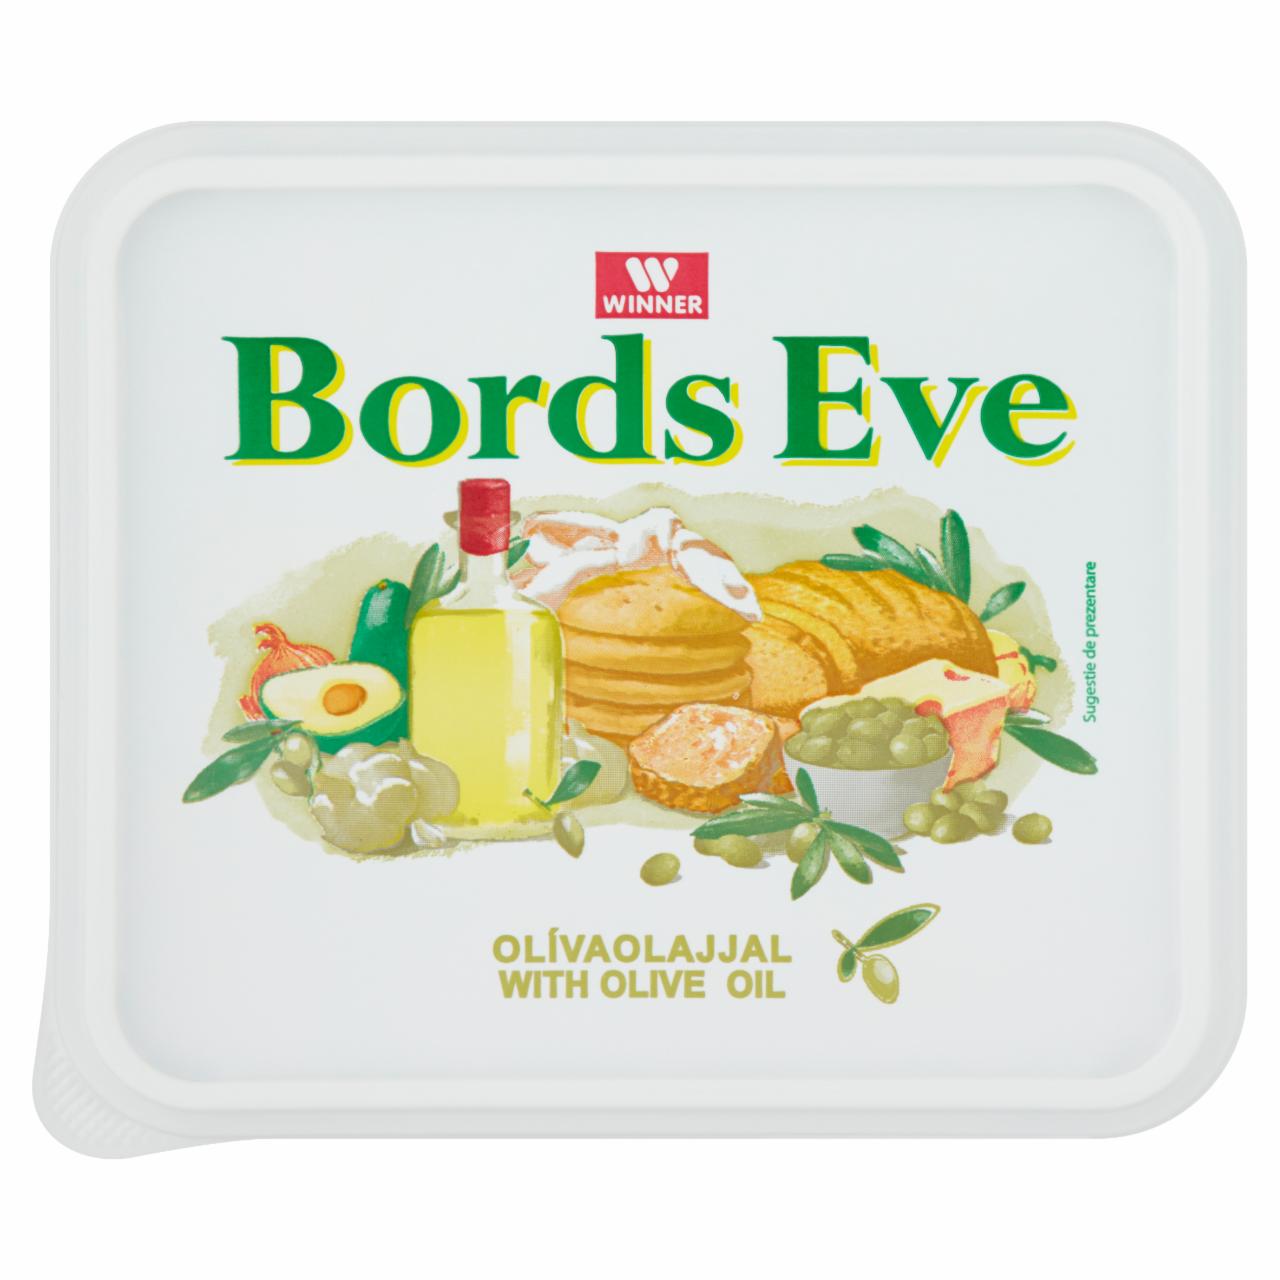 Képek - Olívaolajjal csökkentett zsírtartalmú margarin Bords Eve